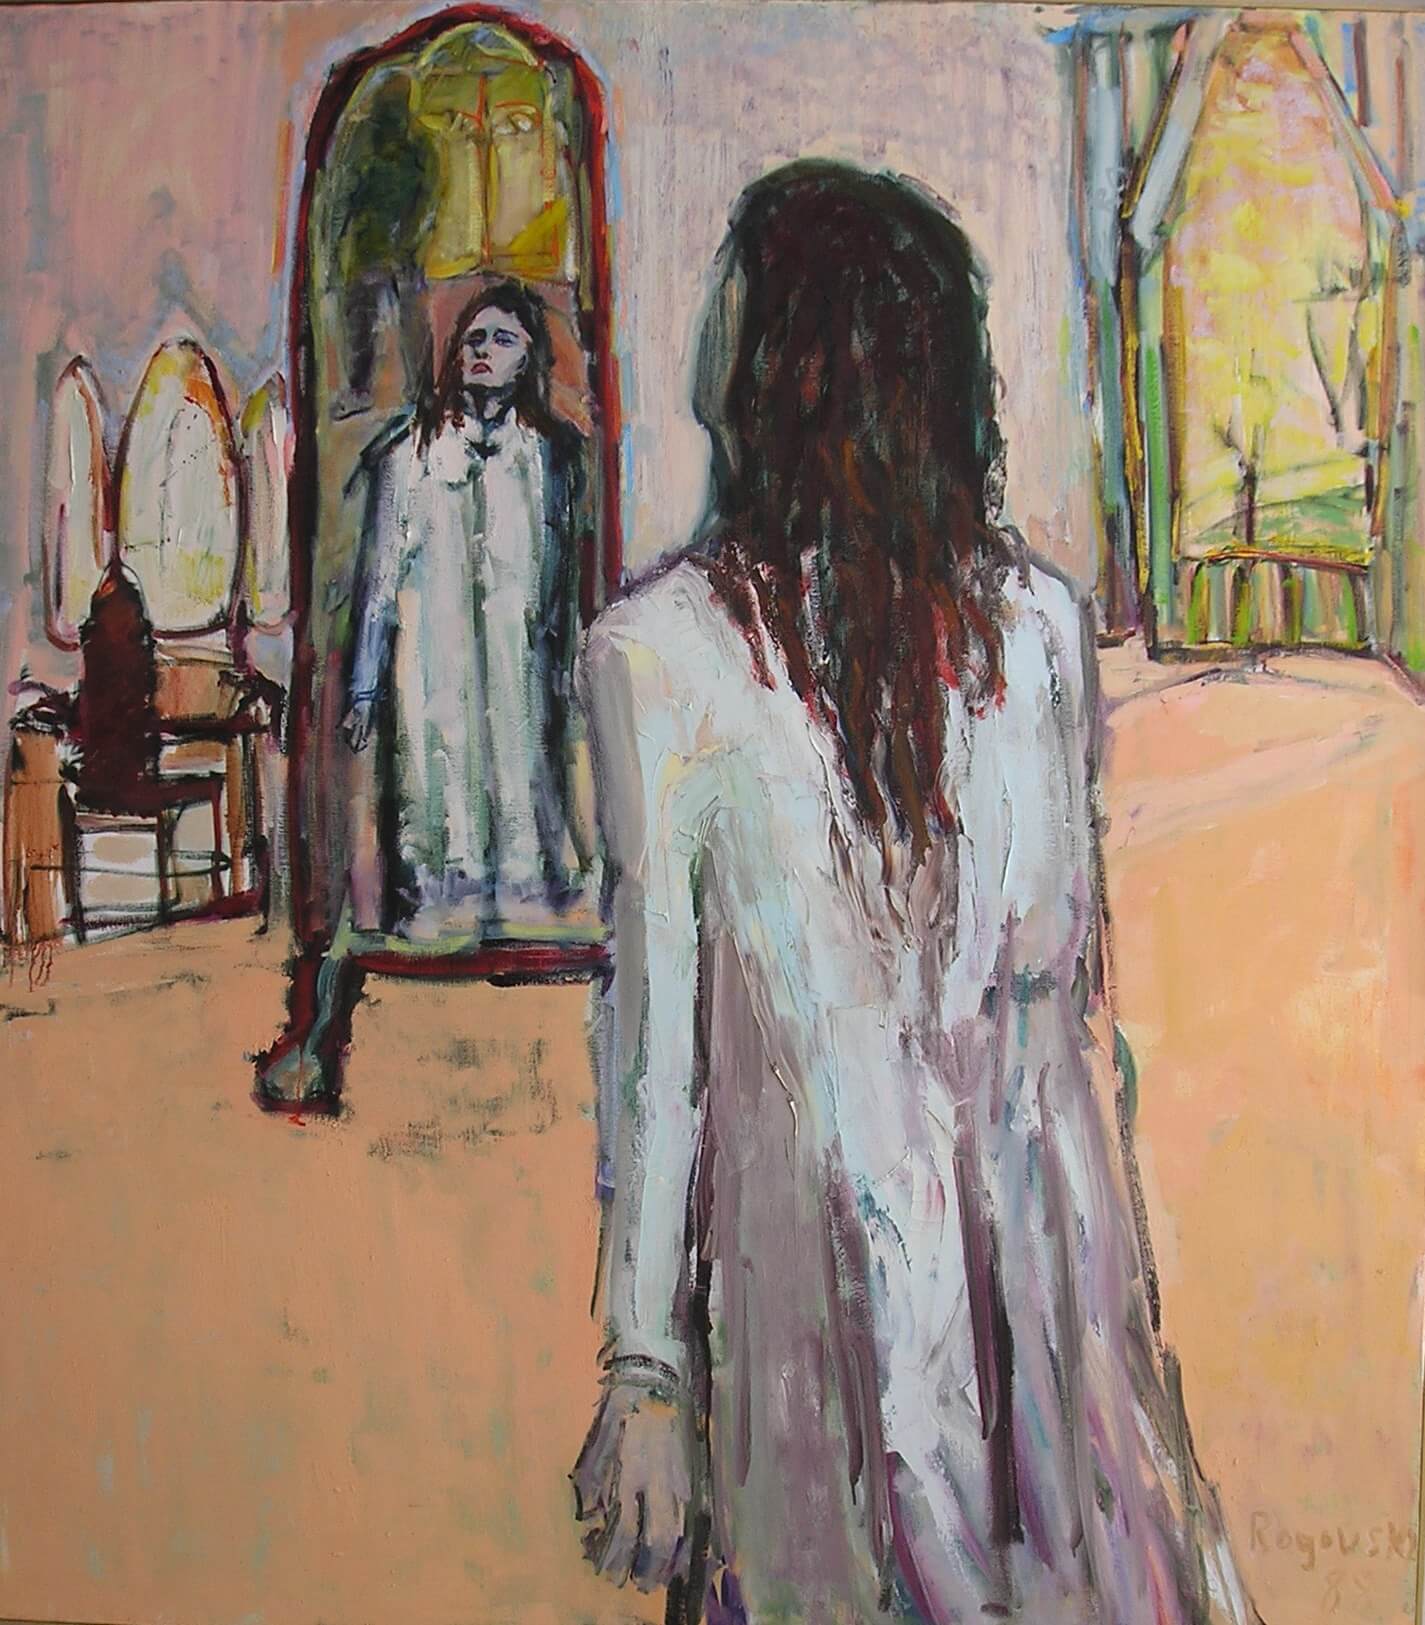 The Mirror, Oil on Canvas - Figurative